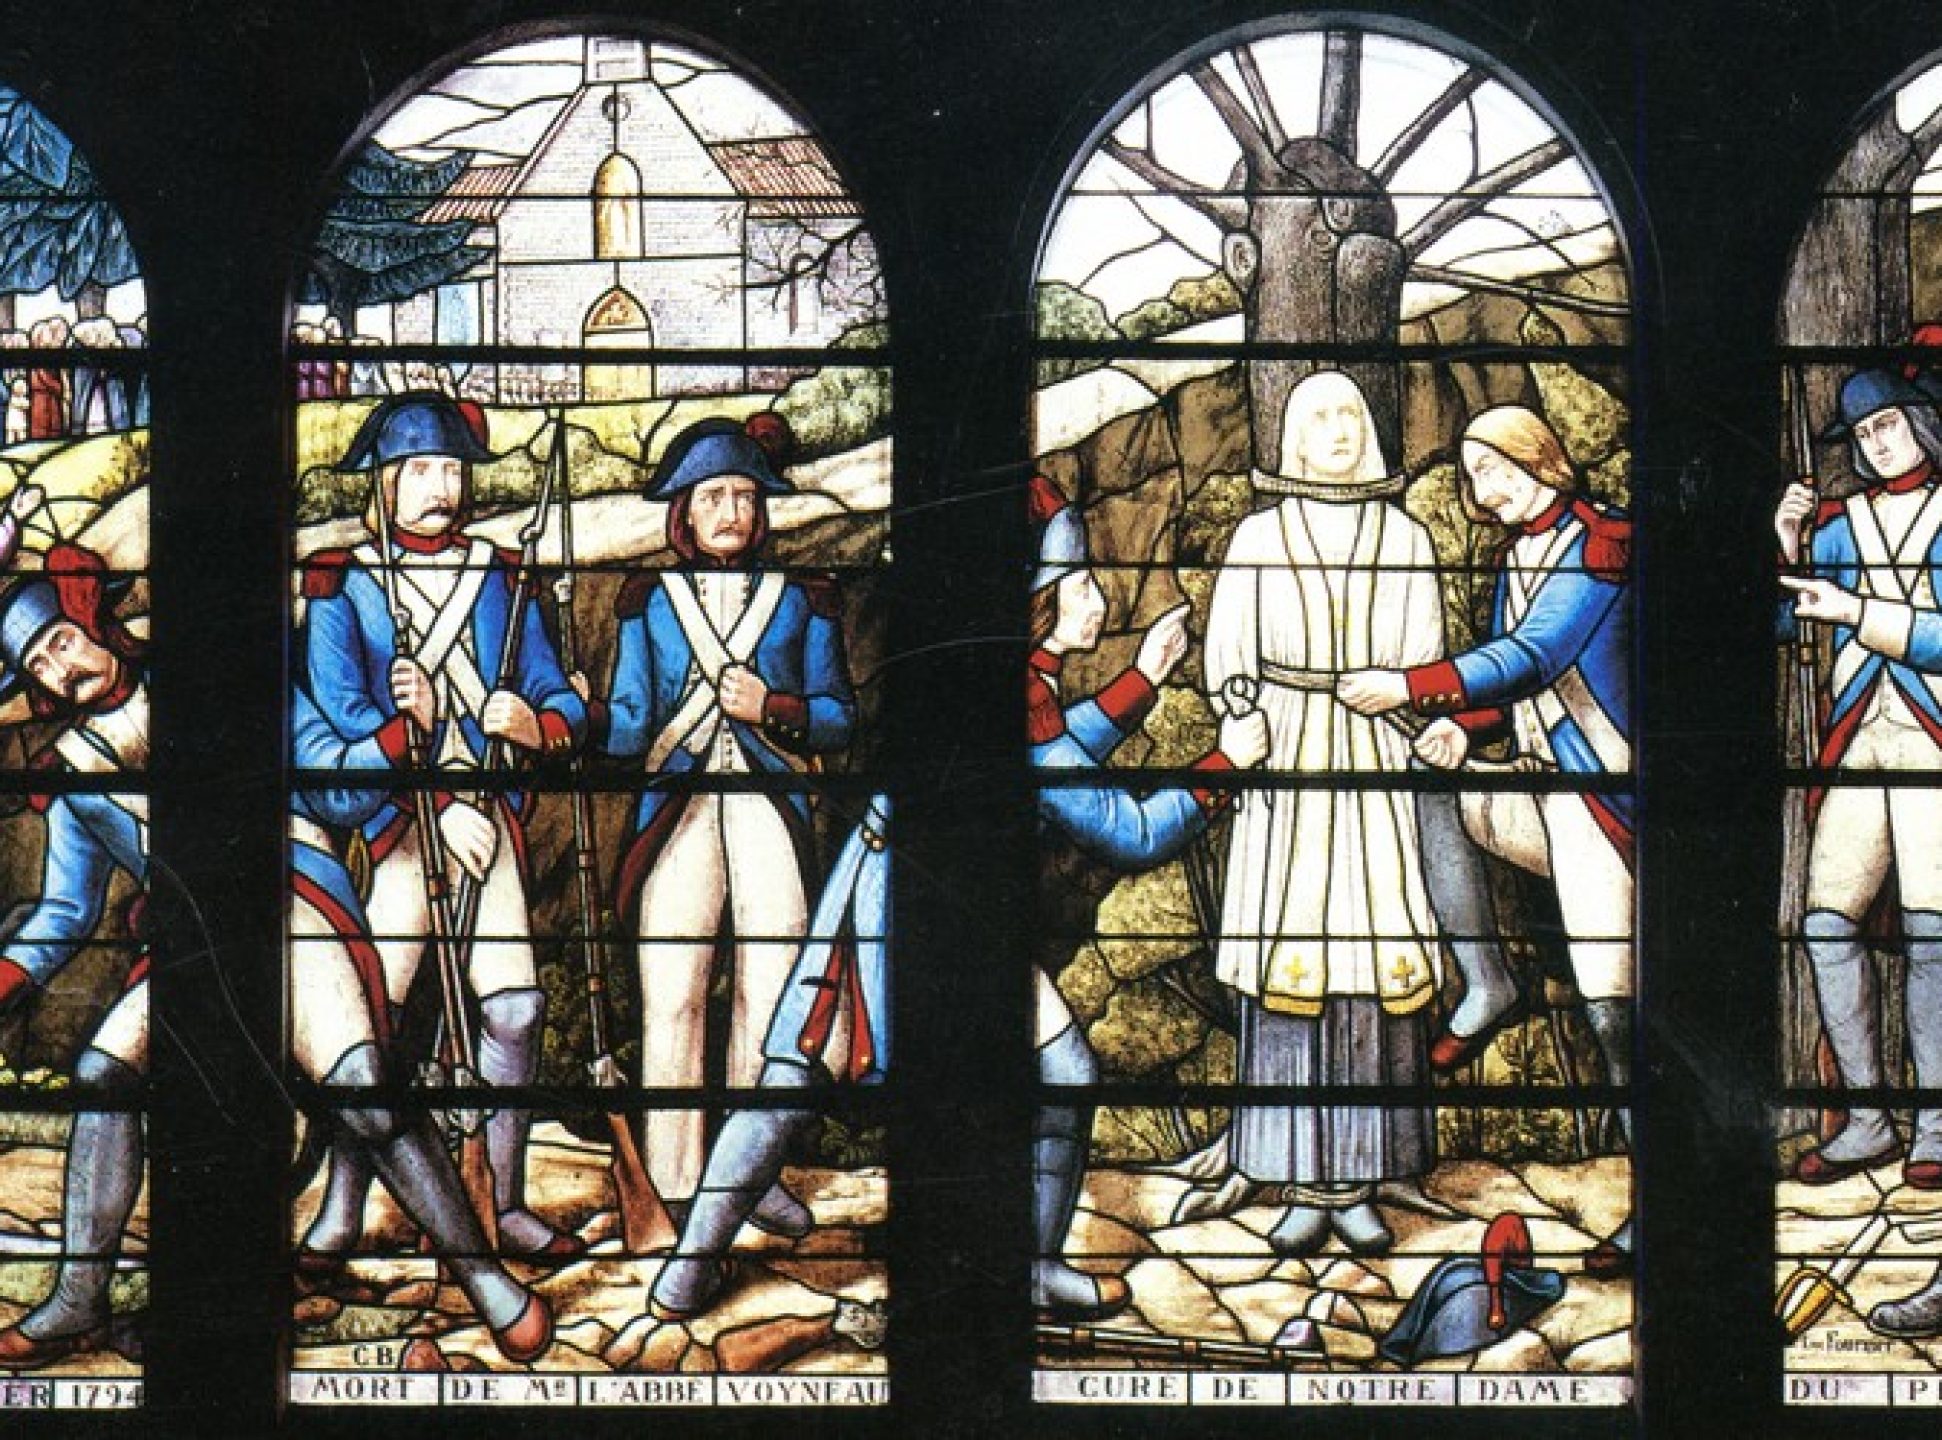 Martyre de l'abbé Voyneau (Les Lucs-sur-Boulogne)